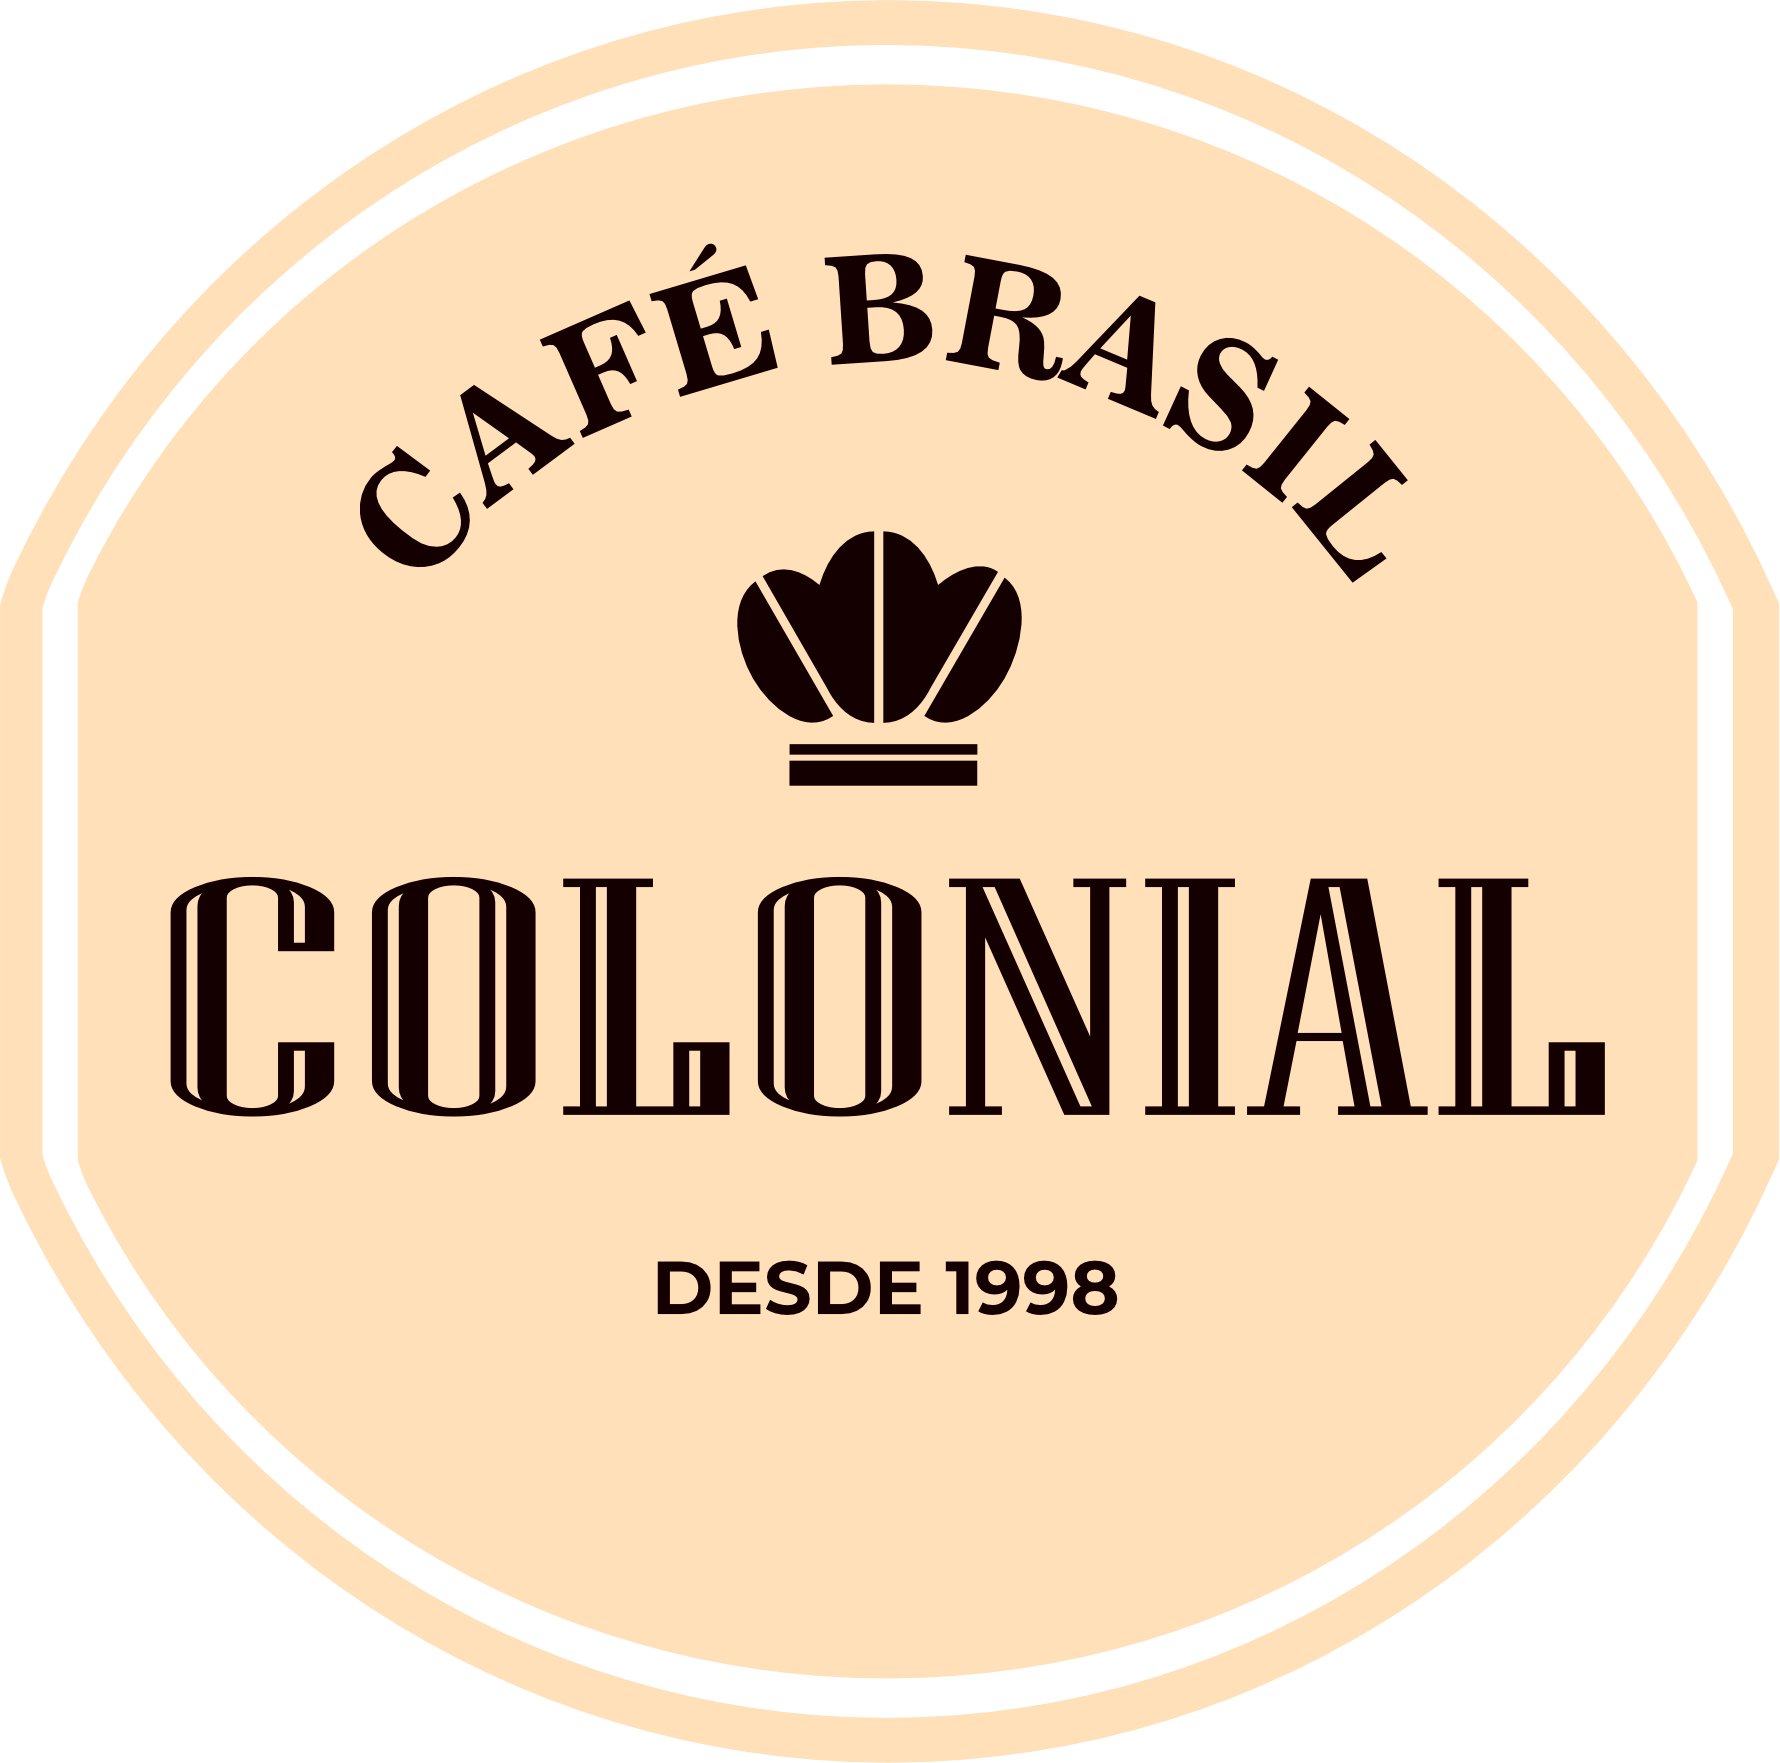 Café Brasil Colonial